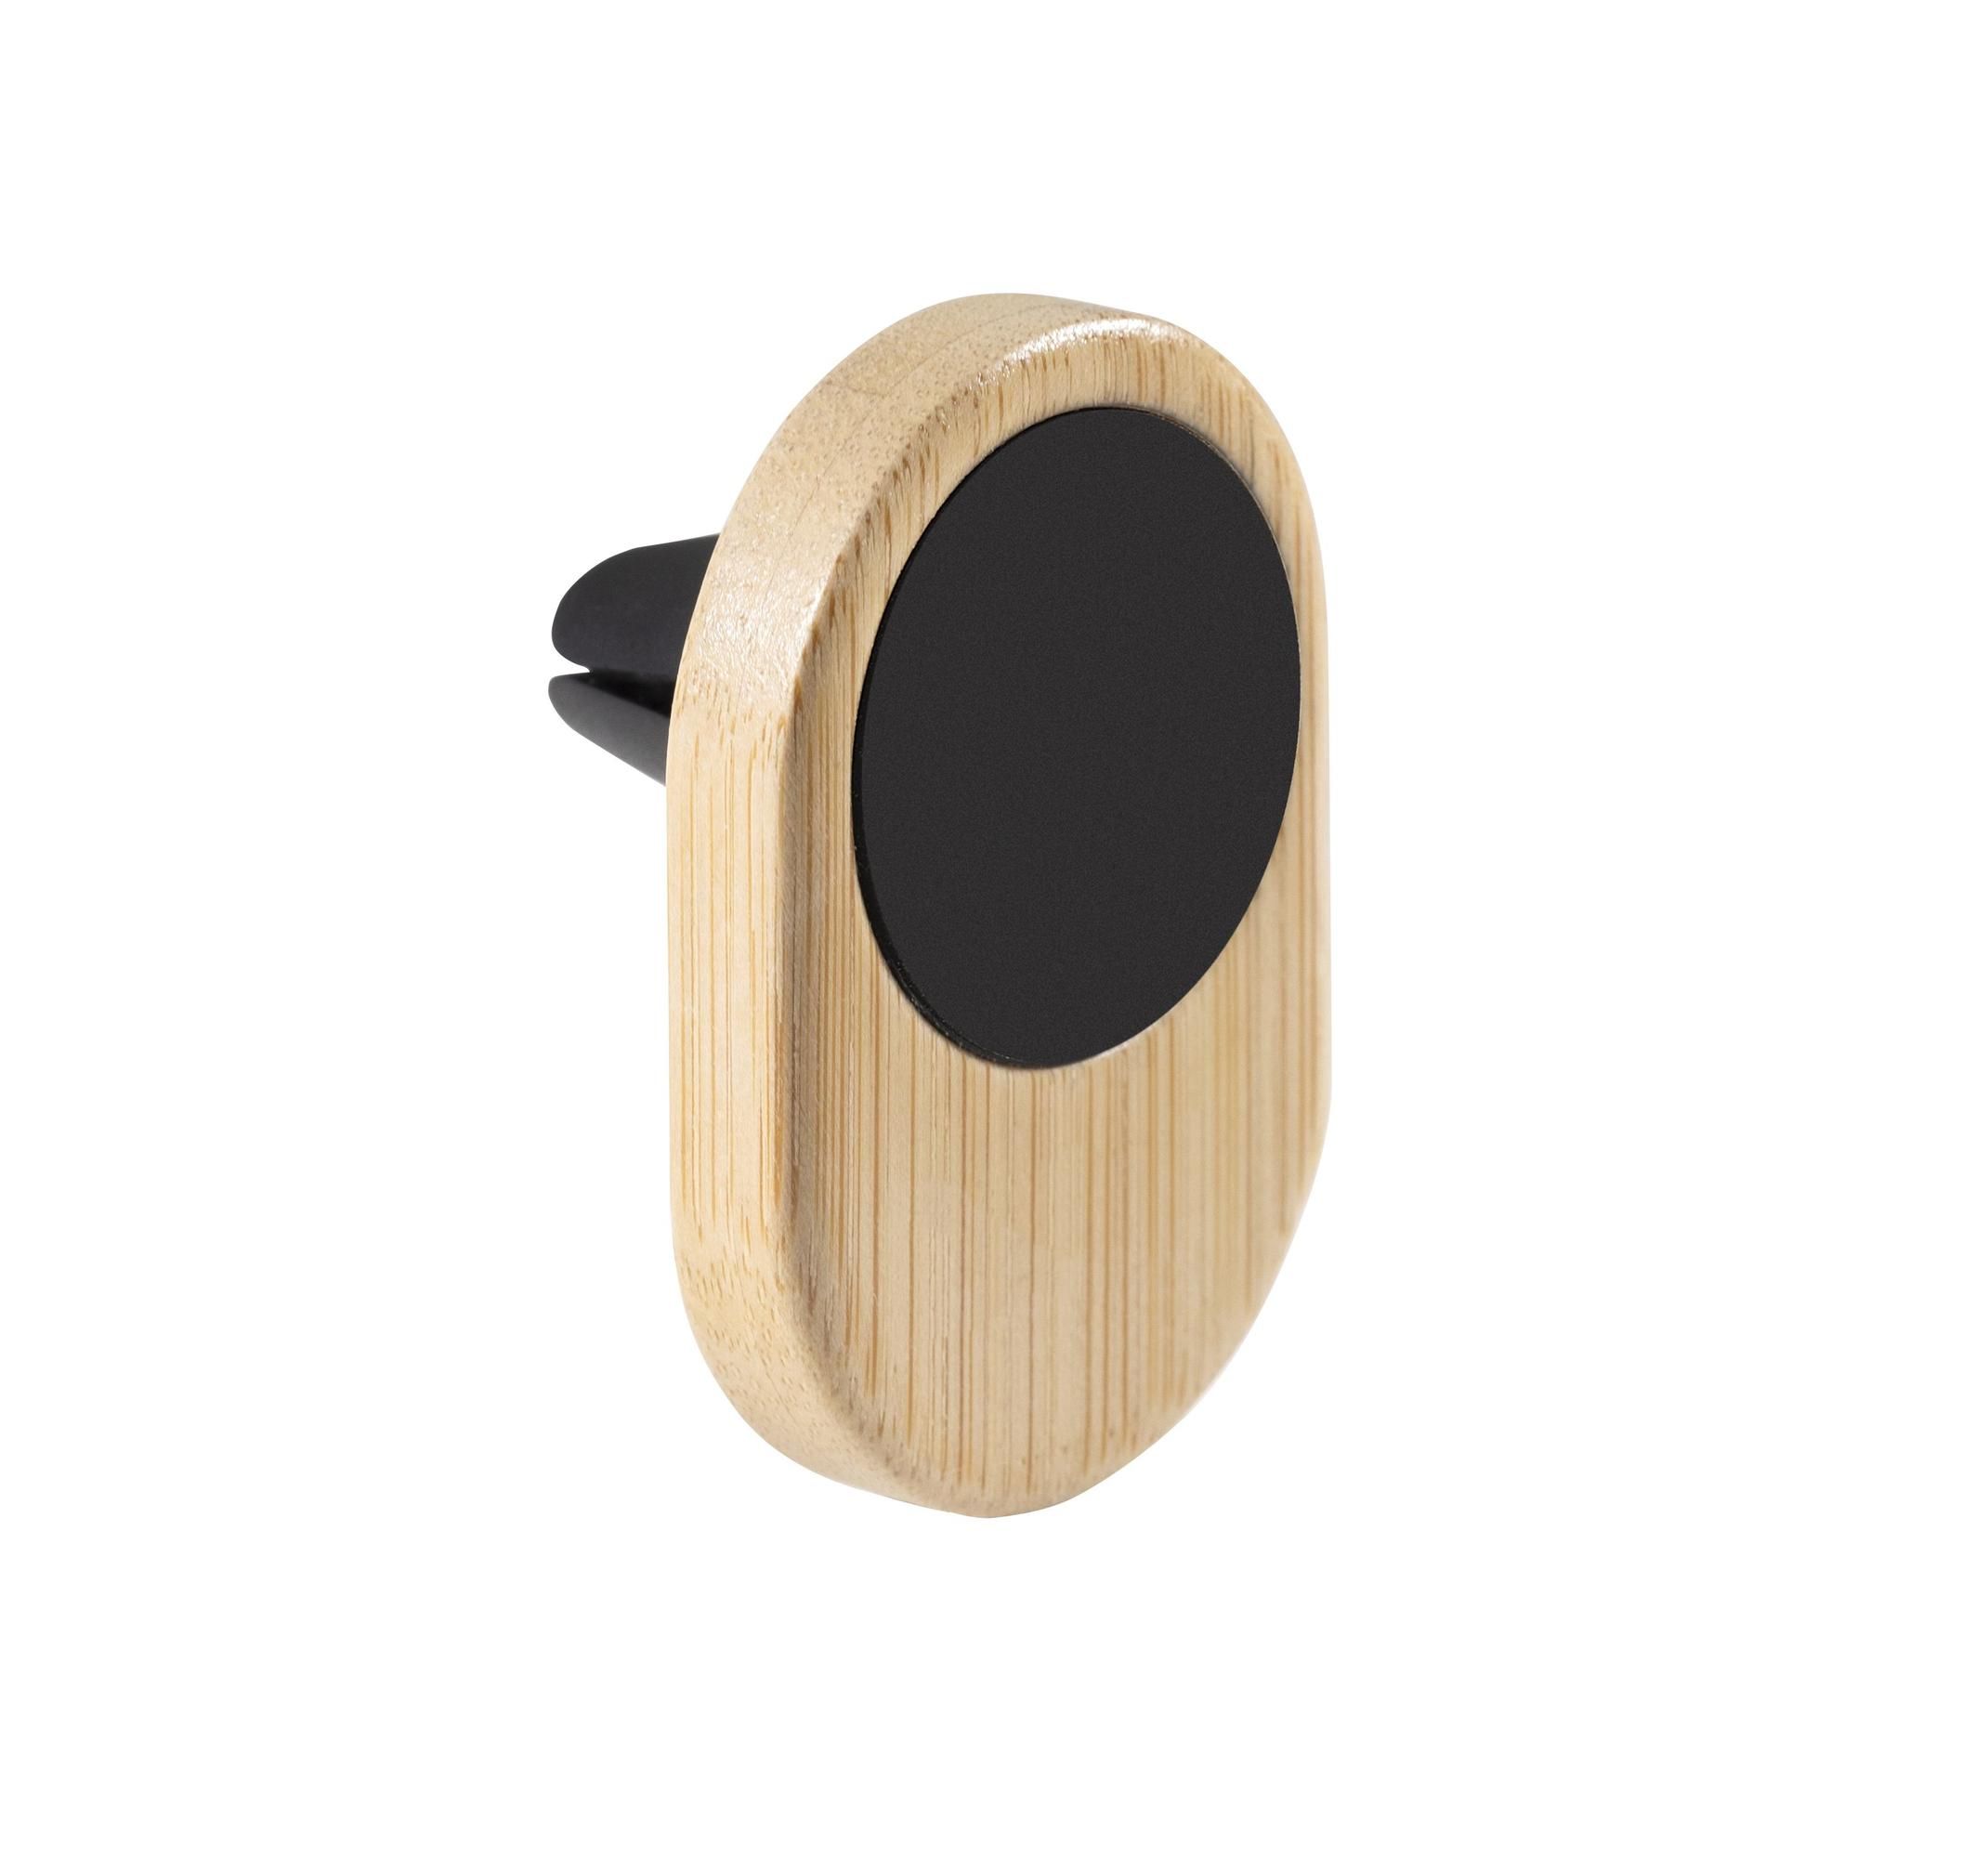 Soporte de Bambú para Smartphone Personalizado, Desde 1,50€